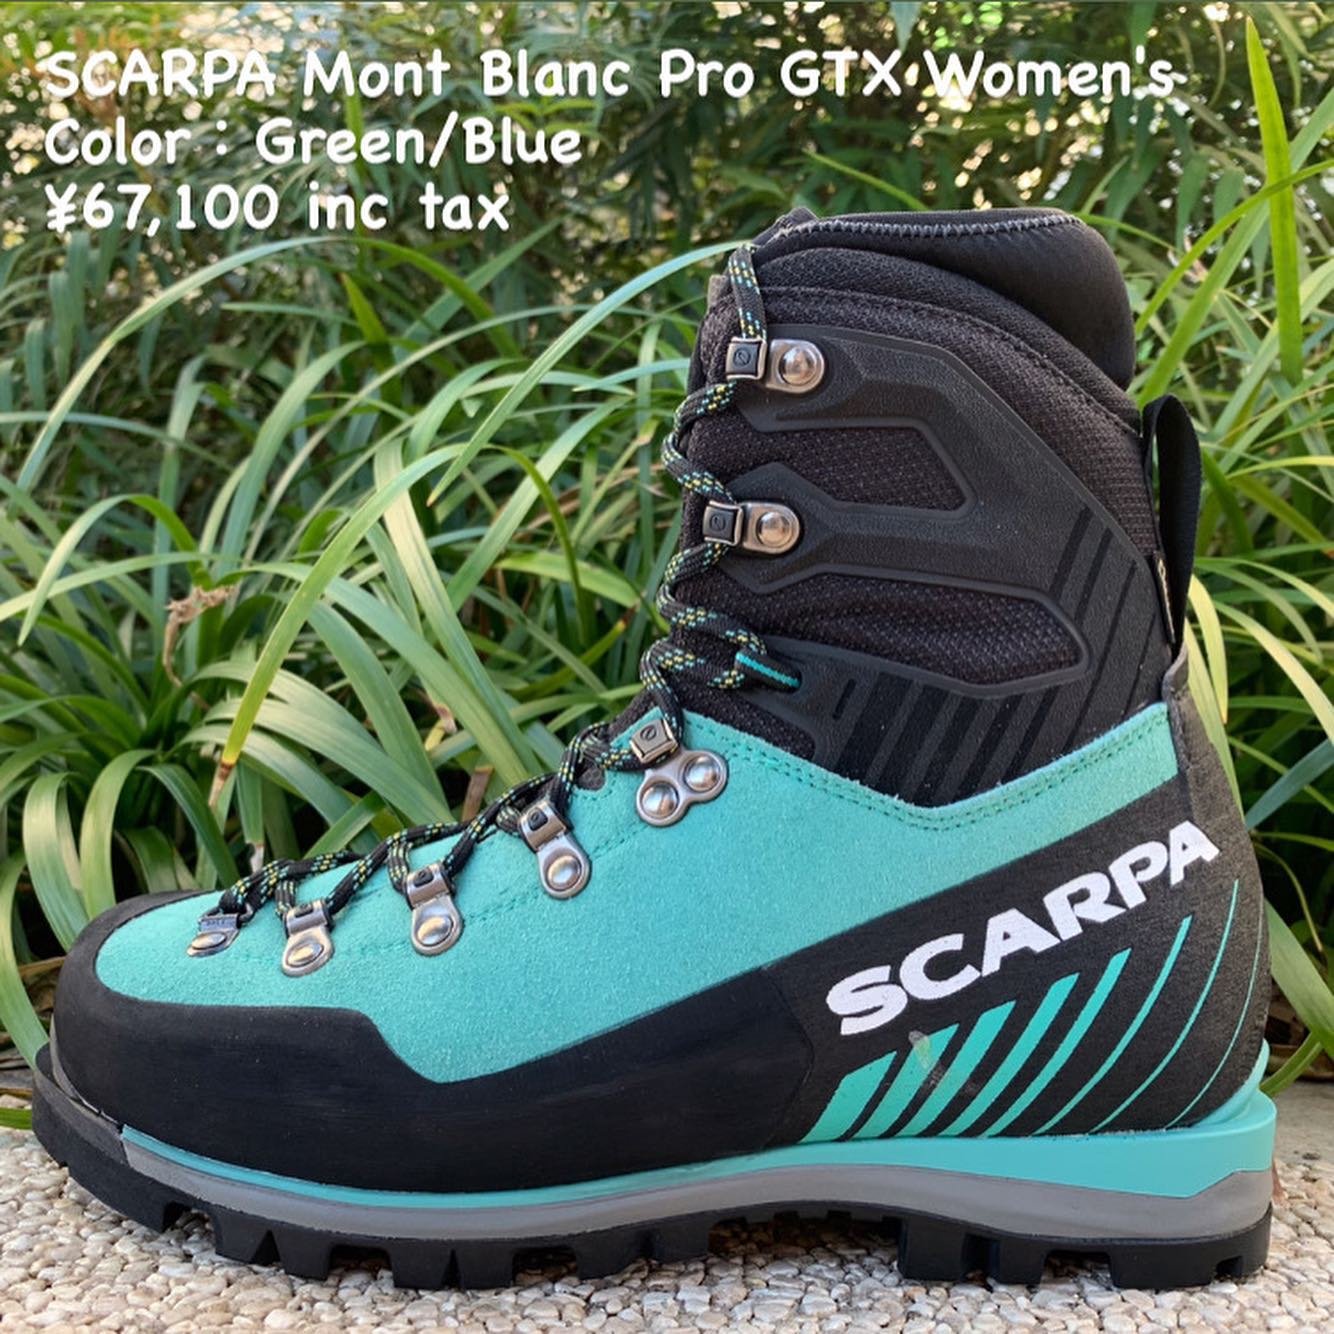 女性用の雪山で使用する登山靴『SCARPA モンブラン プロ GTX ウィメンズ』のご紹介